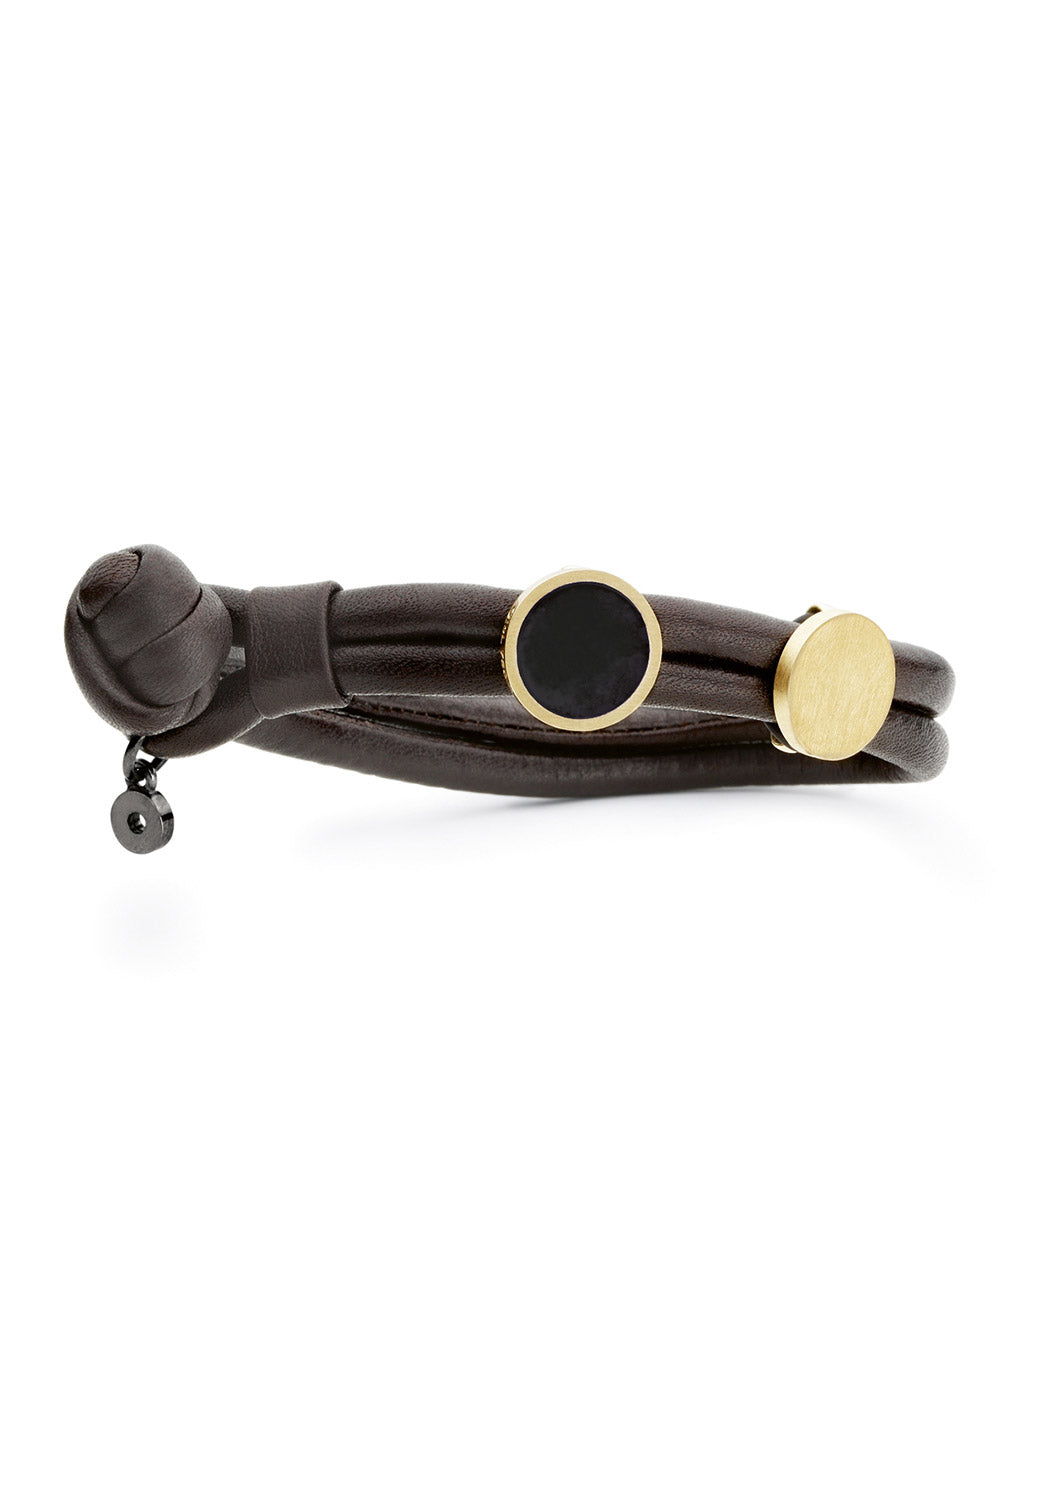 Ole LYNGGAARD Copenhagen Design Bracelet in Leather Size: M